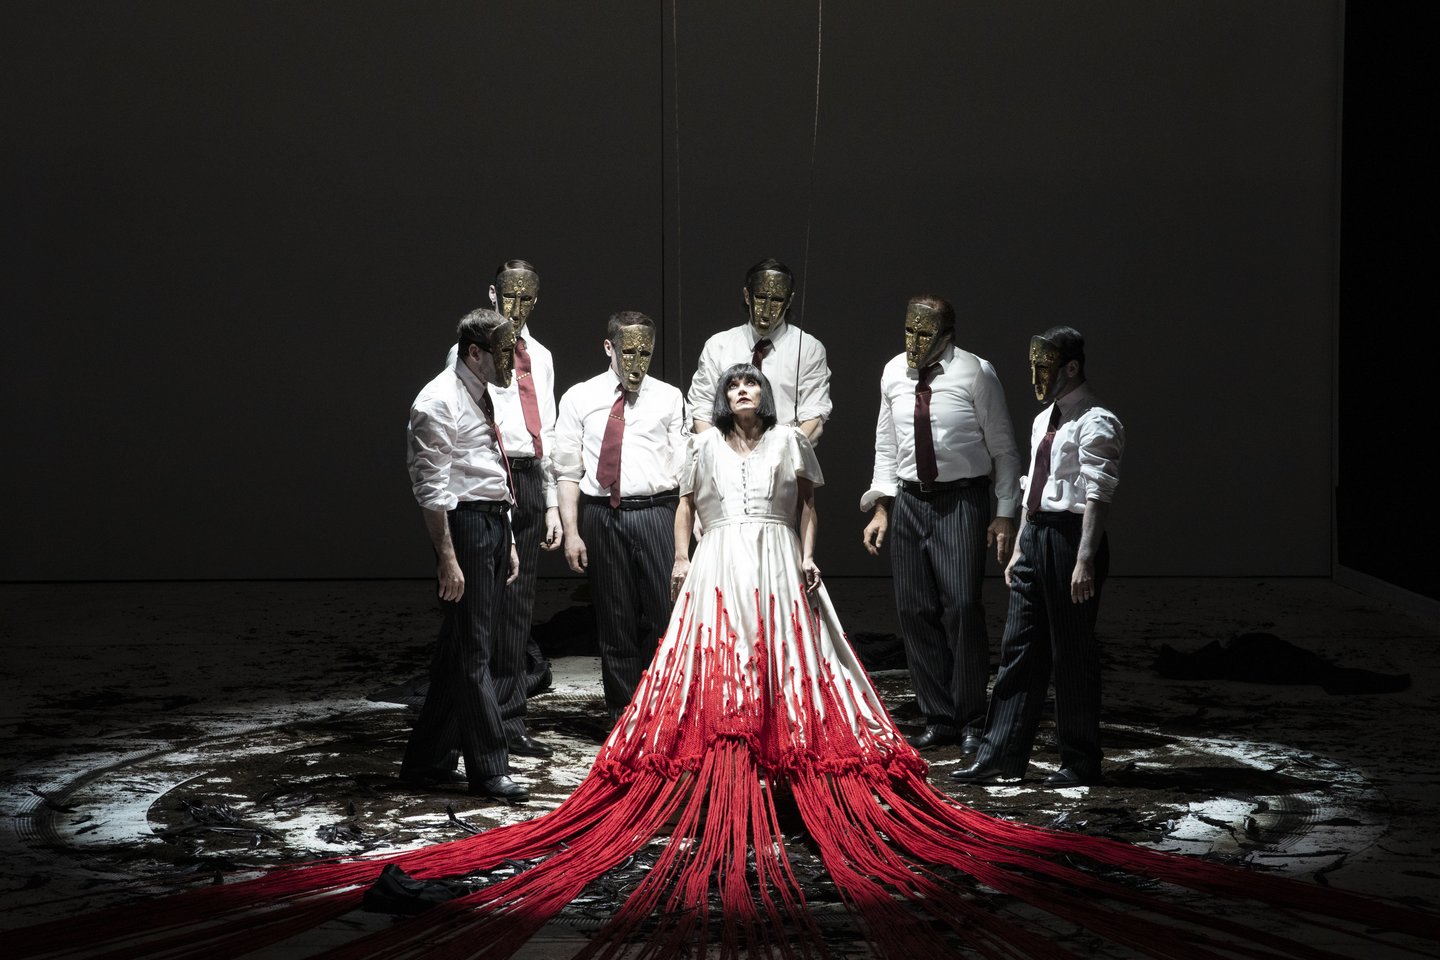 Scena, kai V.Miknevičiūtė pasirodo kruvina suknele, iš kurios vėliau išsilaisvina, – viena įspūdingiausių.<br> Brescia ir Amisano („Teatro alla Scala“) nuotr.